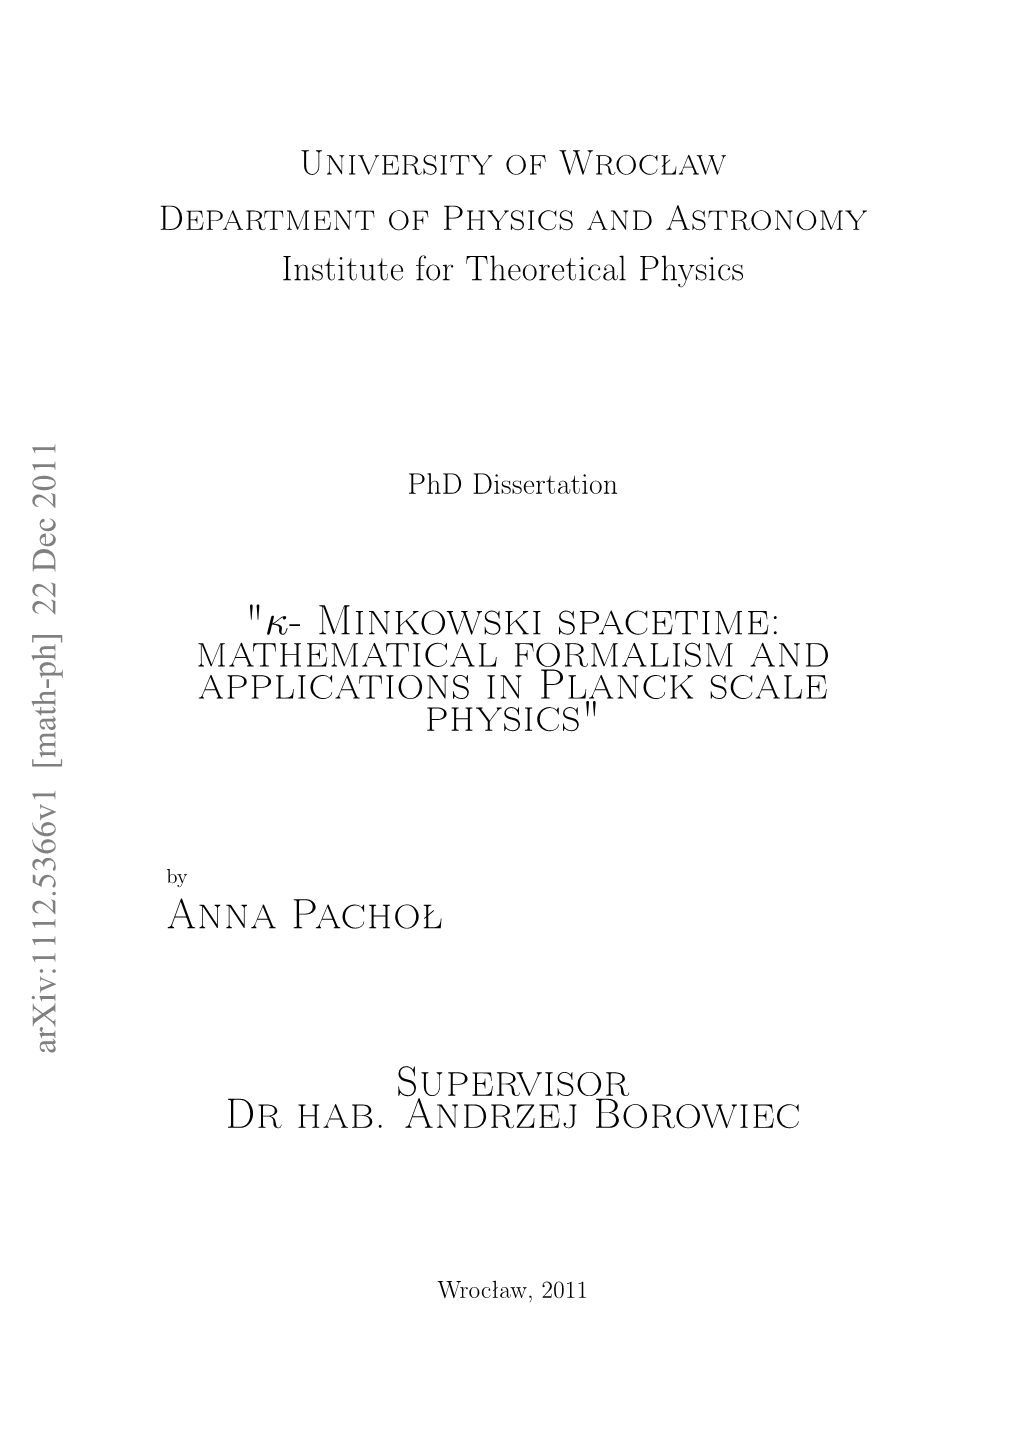 "Κ- Minkowski Spacetime: Mathematical Formalism and Applications in Planck Scale Physics"